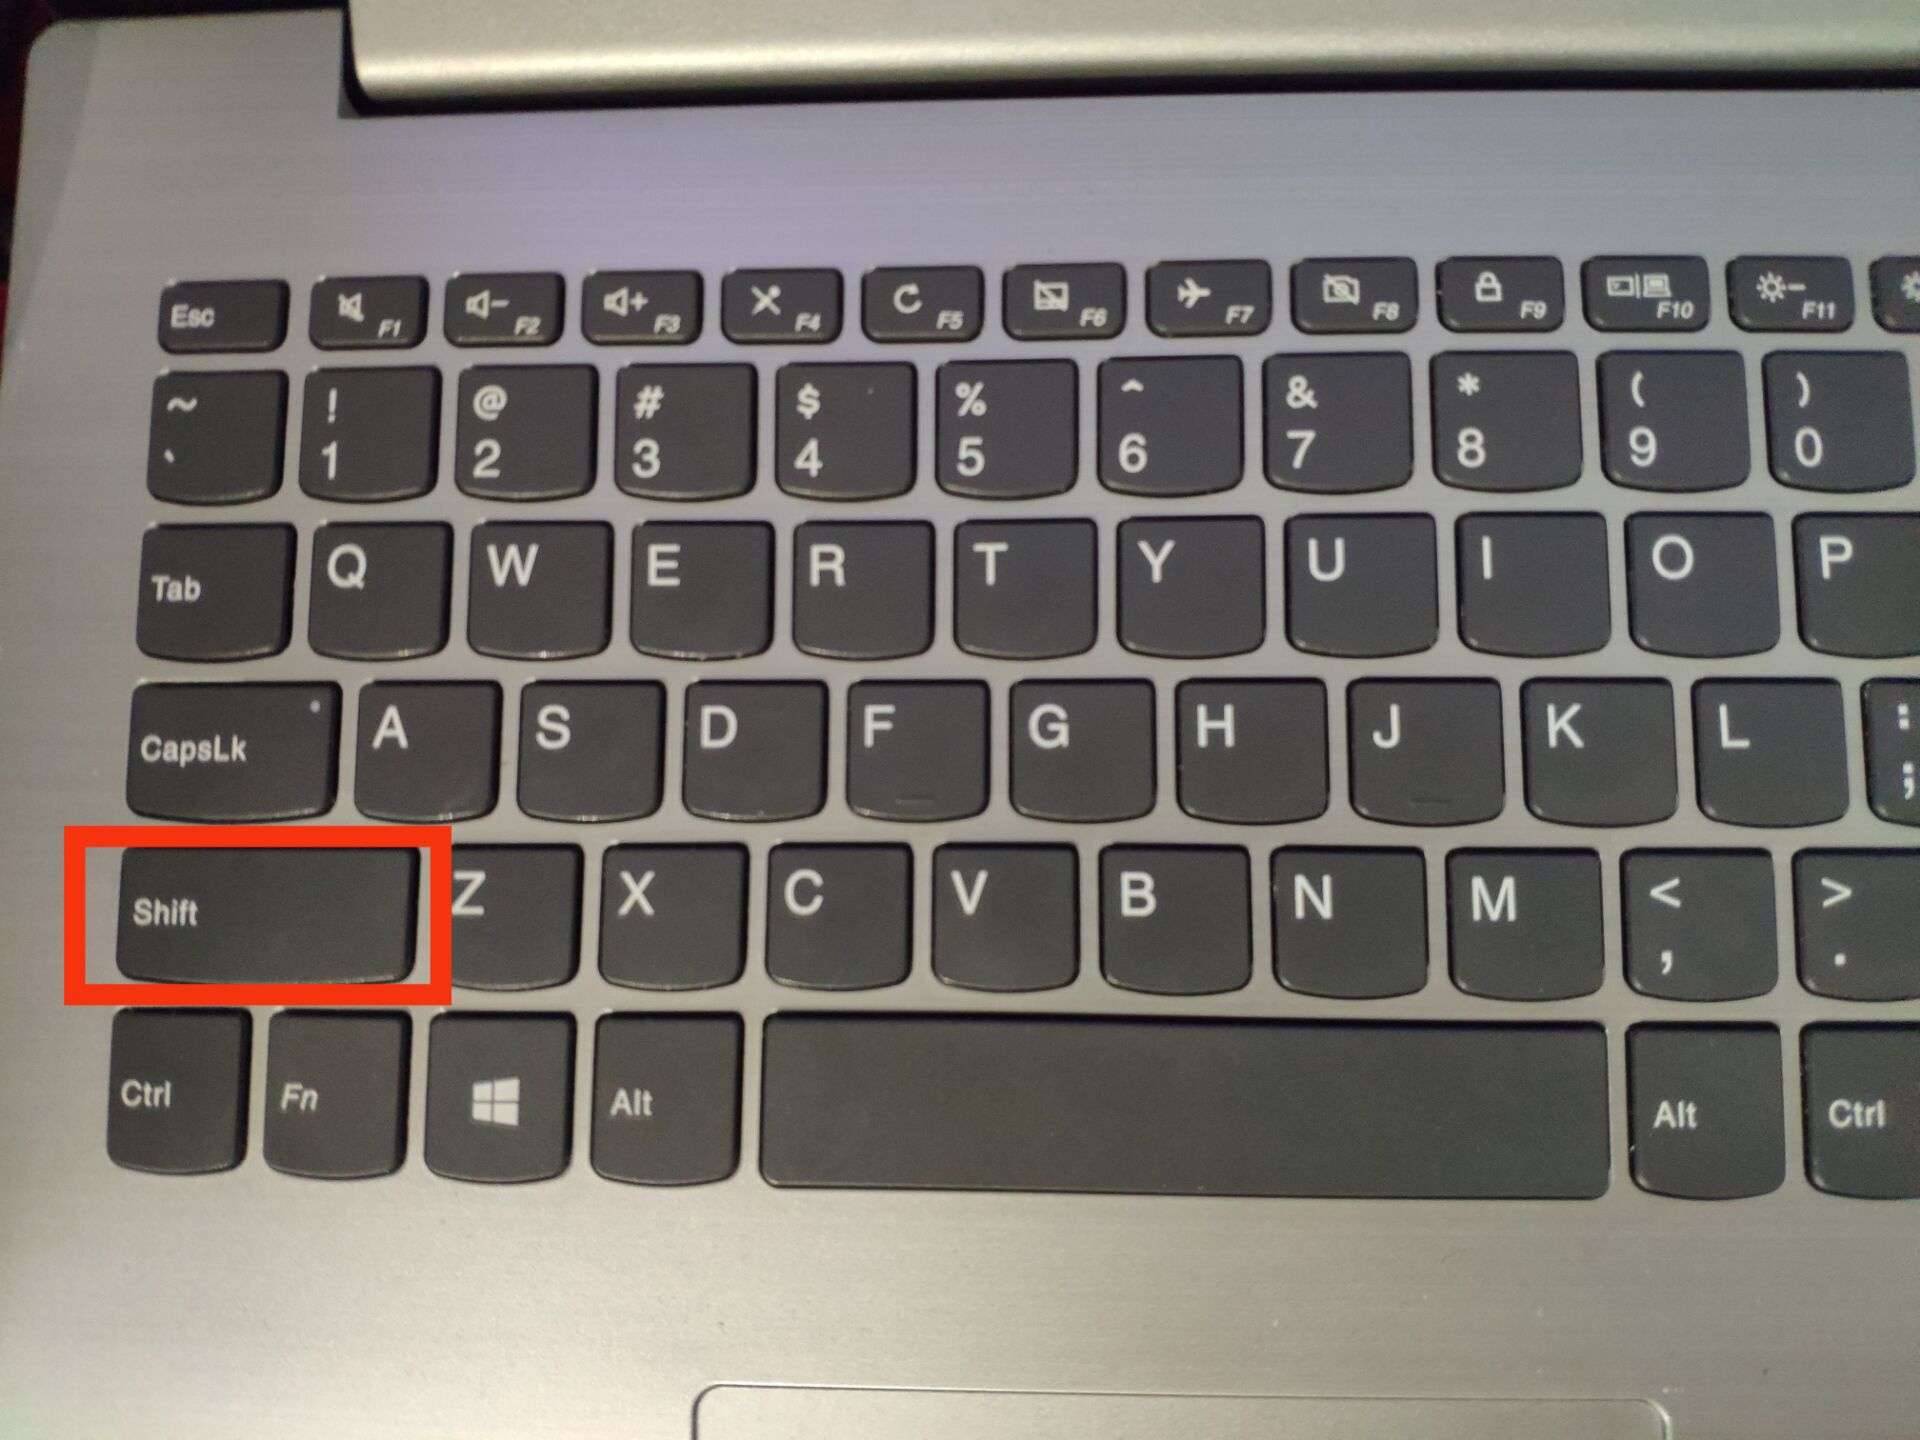 笔记本上ins键在哪里_联想笔记本上功能键_笔记本上insert键在哪